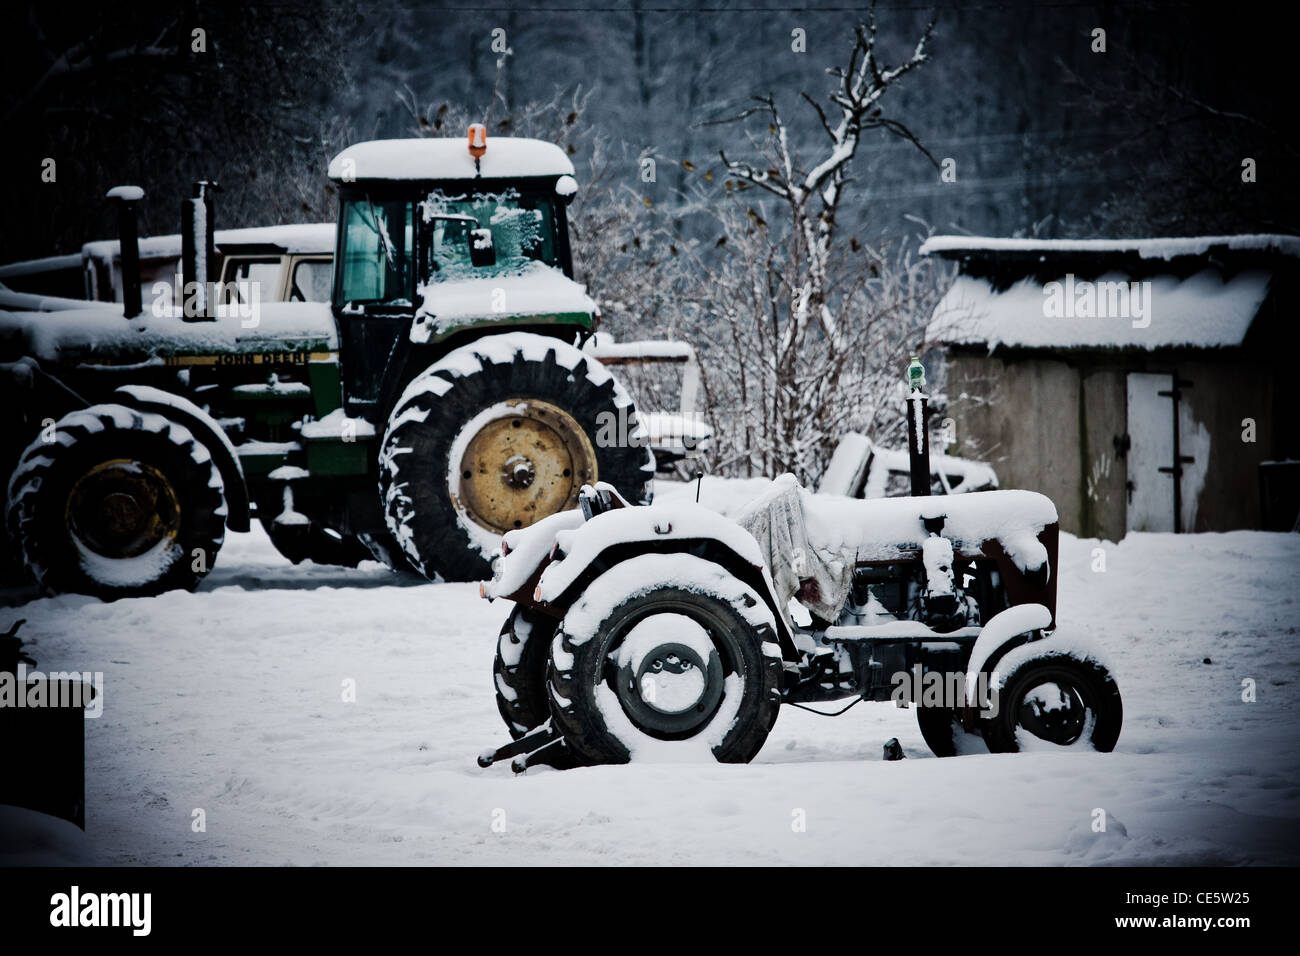 Zwei Traktoren mit Schnee bedeckt, in dem polnischen Dorf "Śliwin". Polnische Landschaft Winterlandschaft. Stockfoto